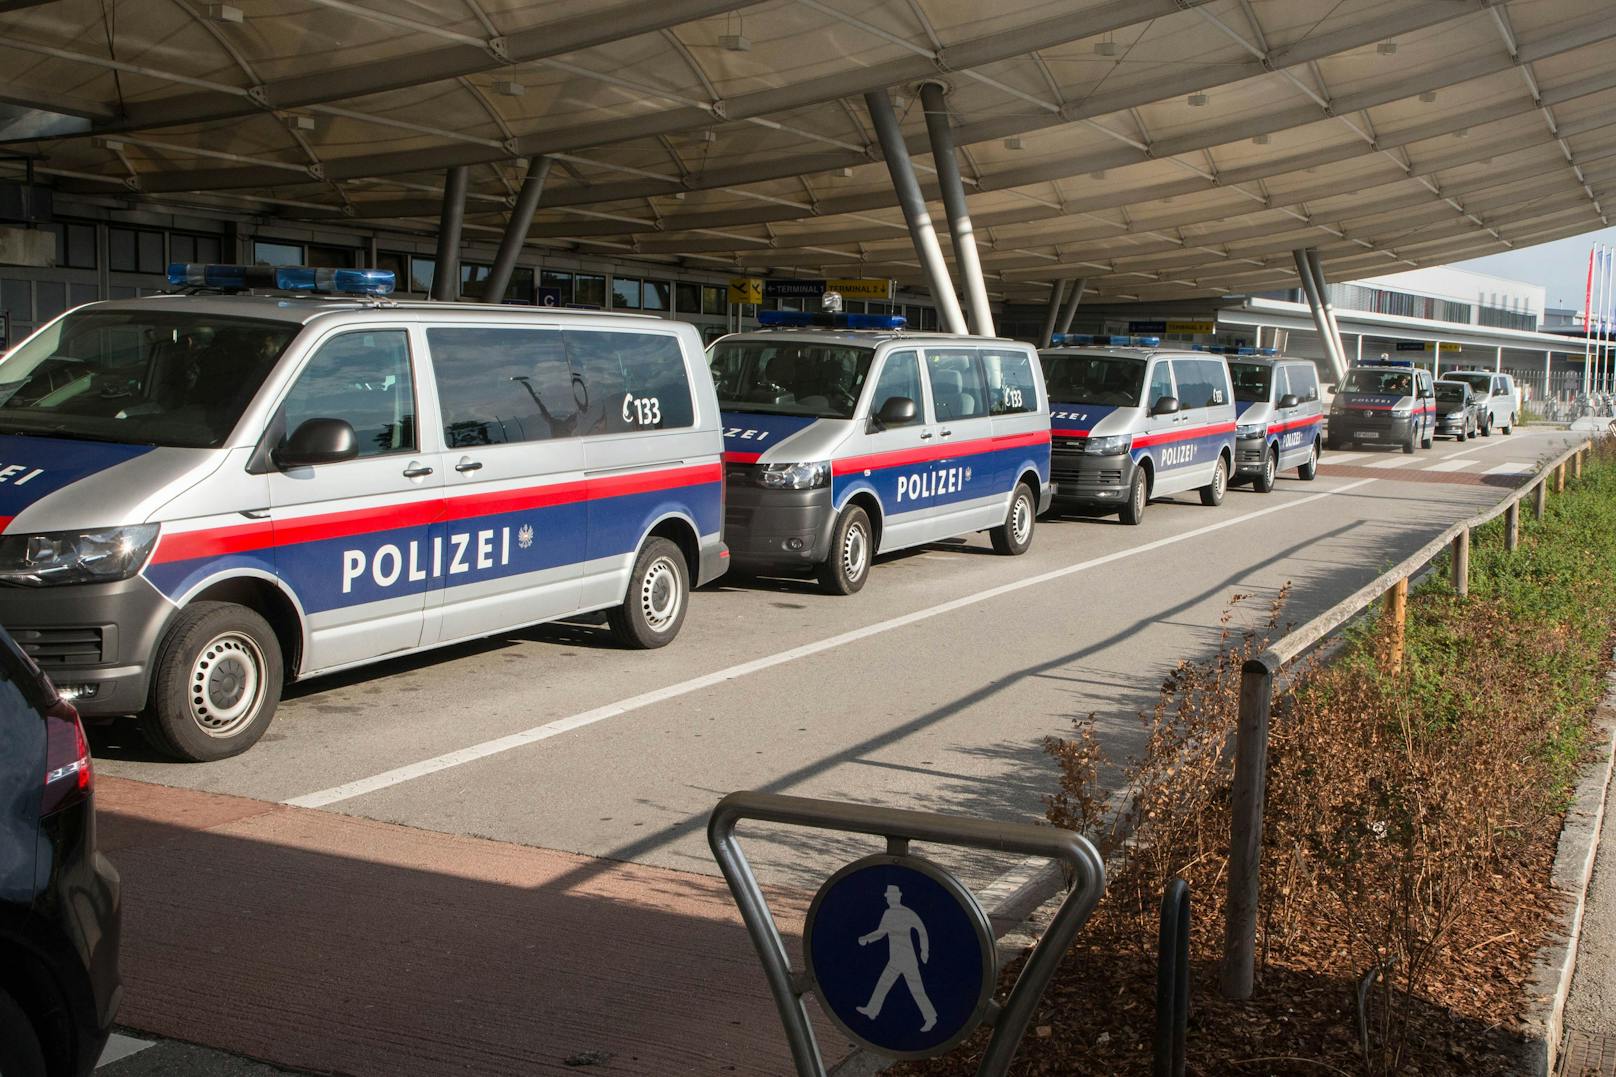 Bombendrohung – Salzburger Flughafen wurde evakuiert